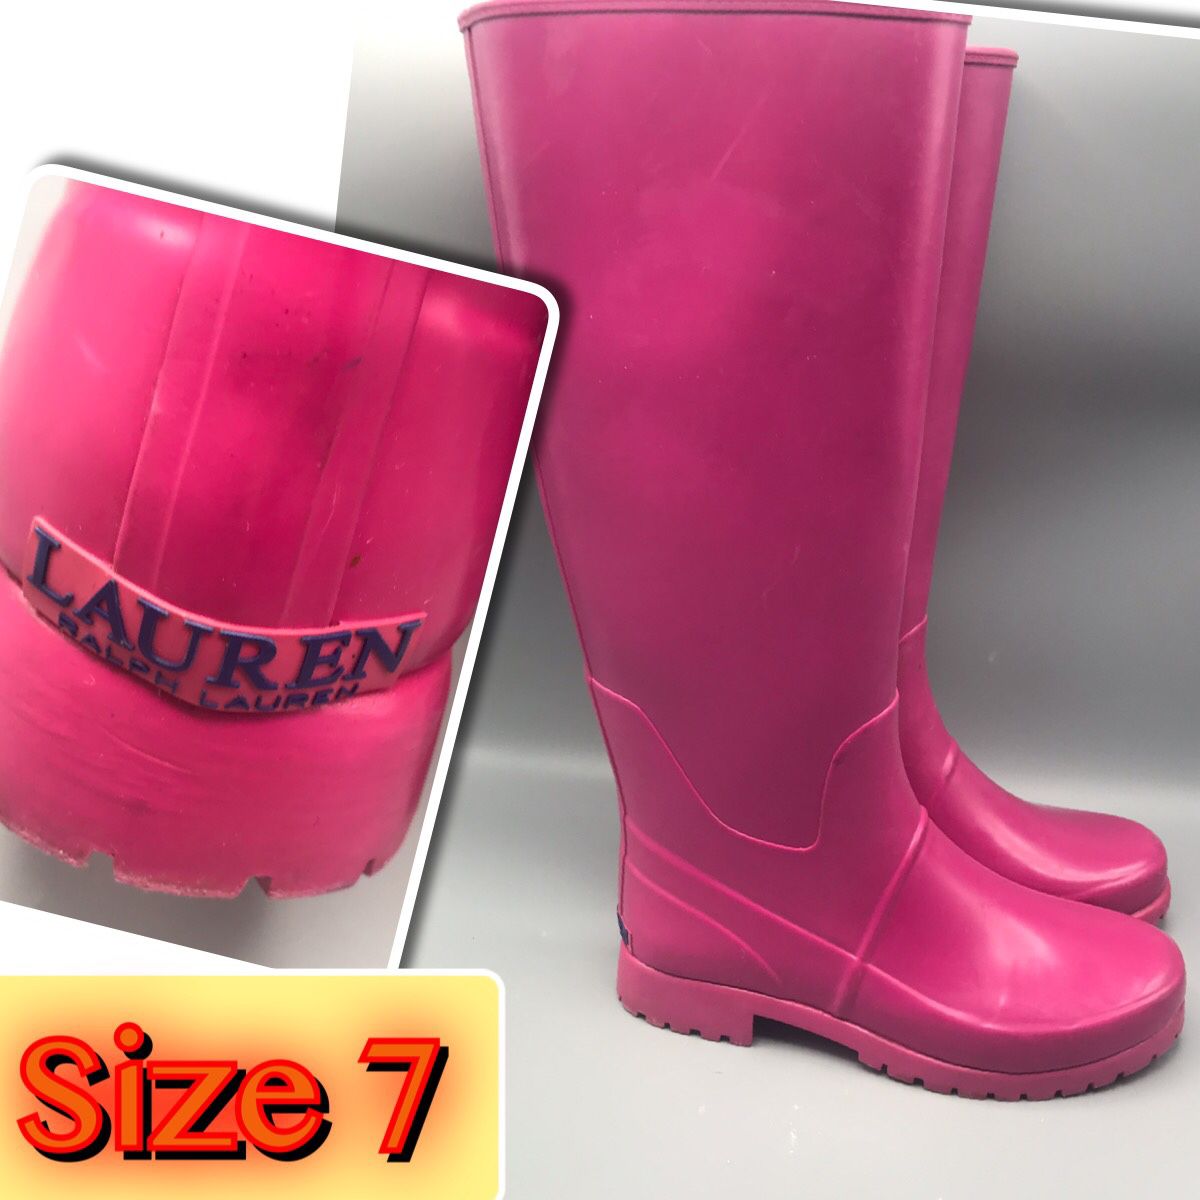 Ralph Lauren Women’s Rain Boots Size 7